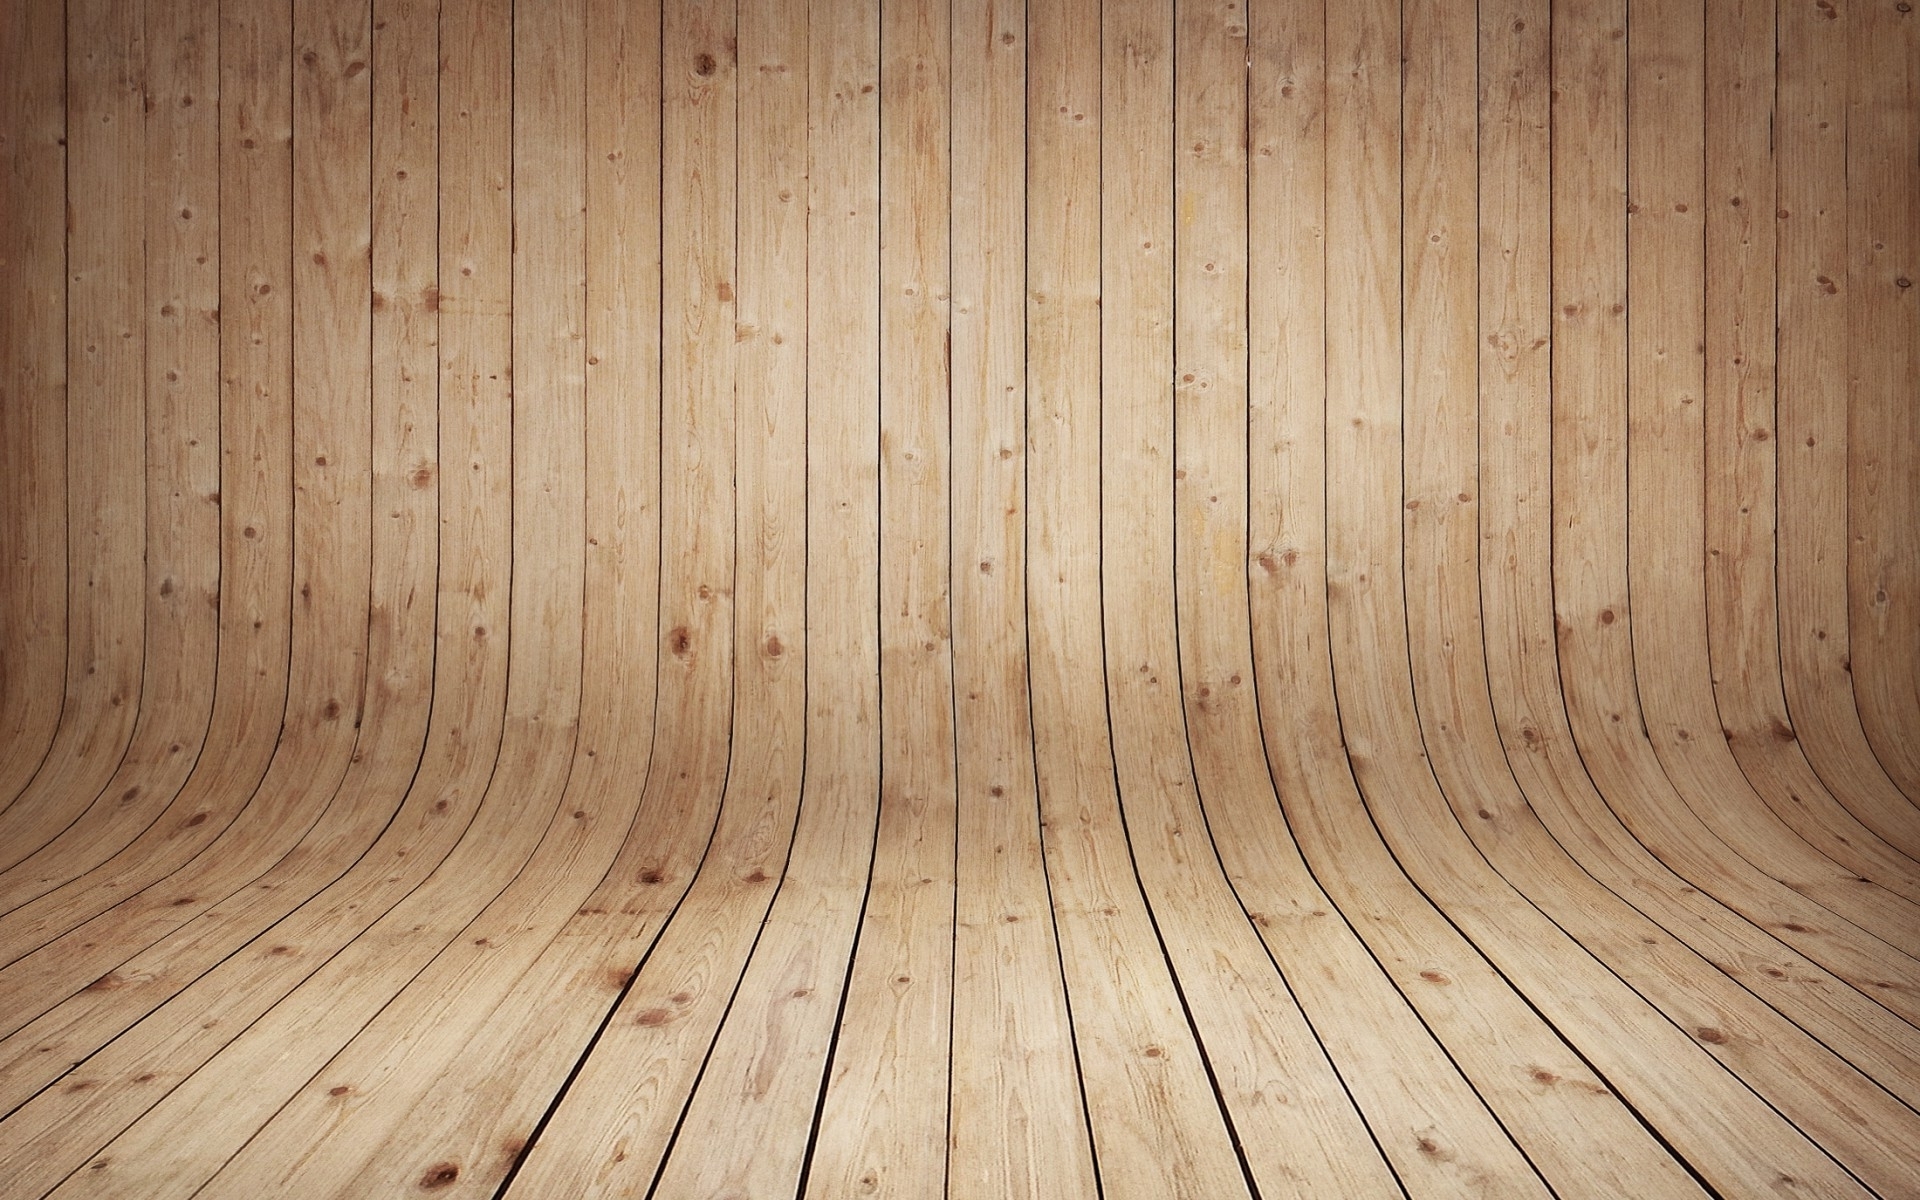 Hình nền gỗ là lựa chọn tuyệt vời để mang đến không gian ấm cúng, gần gũi với thiên nhiên. Sử dụng hình nền gỗ sẽ giúp căn phòng của bạn trở nên sang trọng và đẳng cấp hơn bao giờ hết. Hãy xem hình ảnh liên quan để thấy sự tuyệt vời của hình nền gỗ.